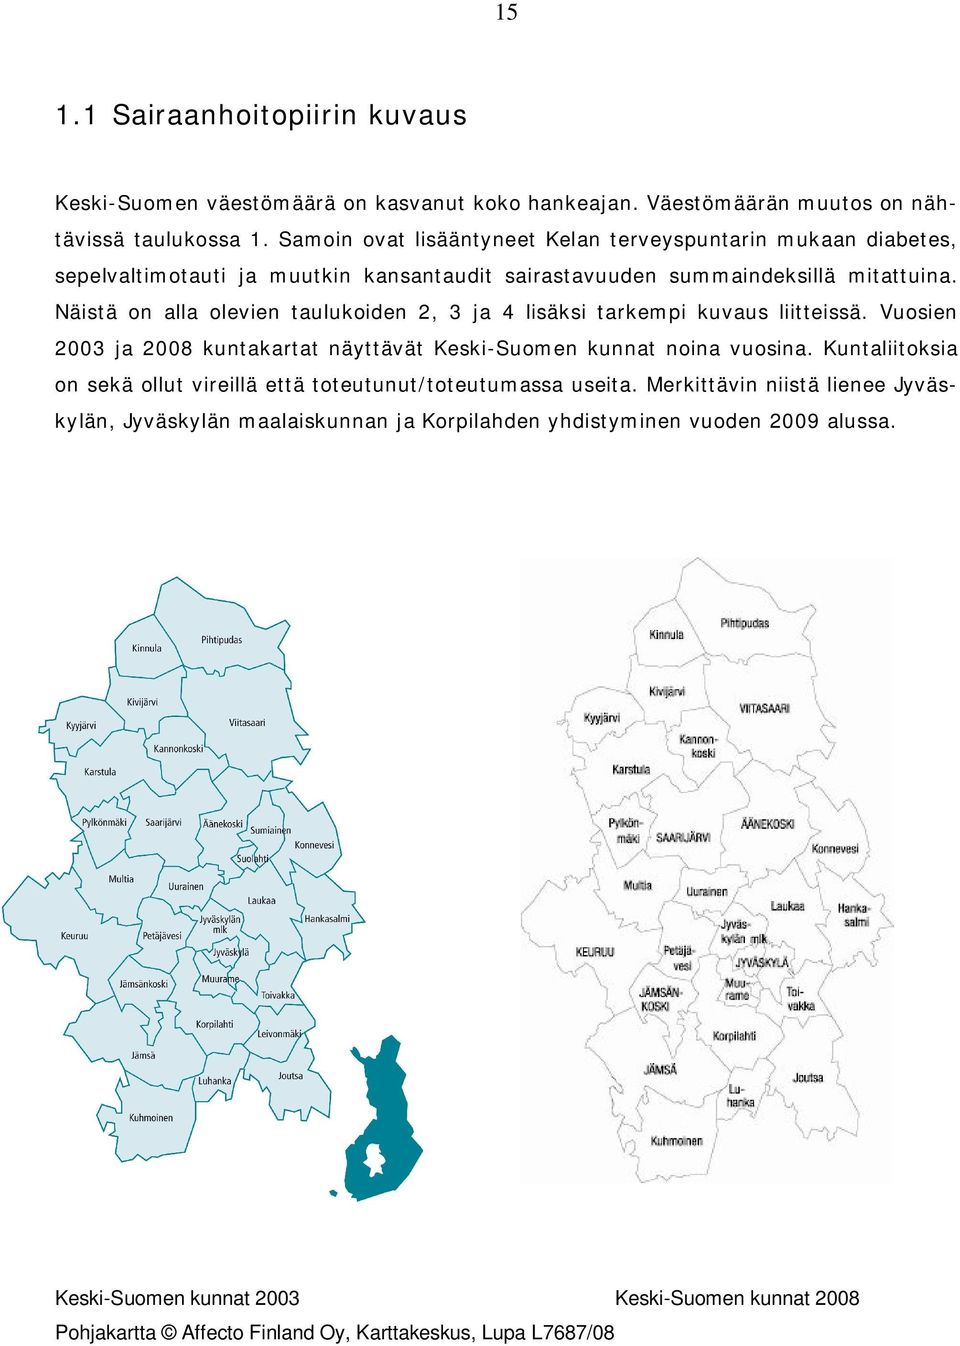 Näistä on alla olevien taulukoiden 2, 3 ja 4 lisäksi tarkempi kuvaus liitteissä. Vuosien 2003 ja 2008 kuntakartat näyttävät Keski-Suomen kunnat noina vuosina.